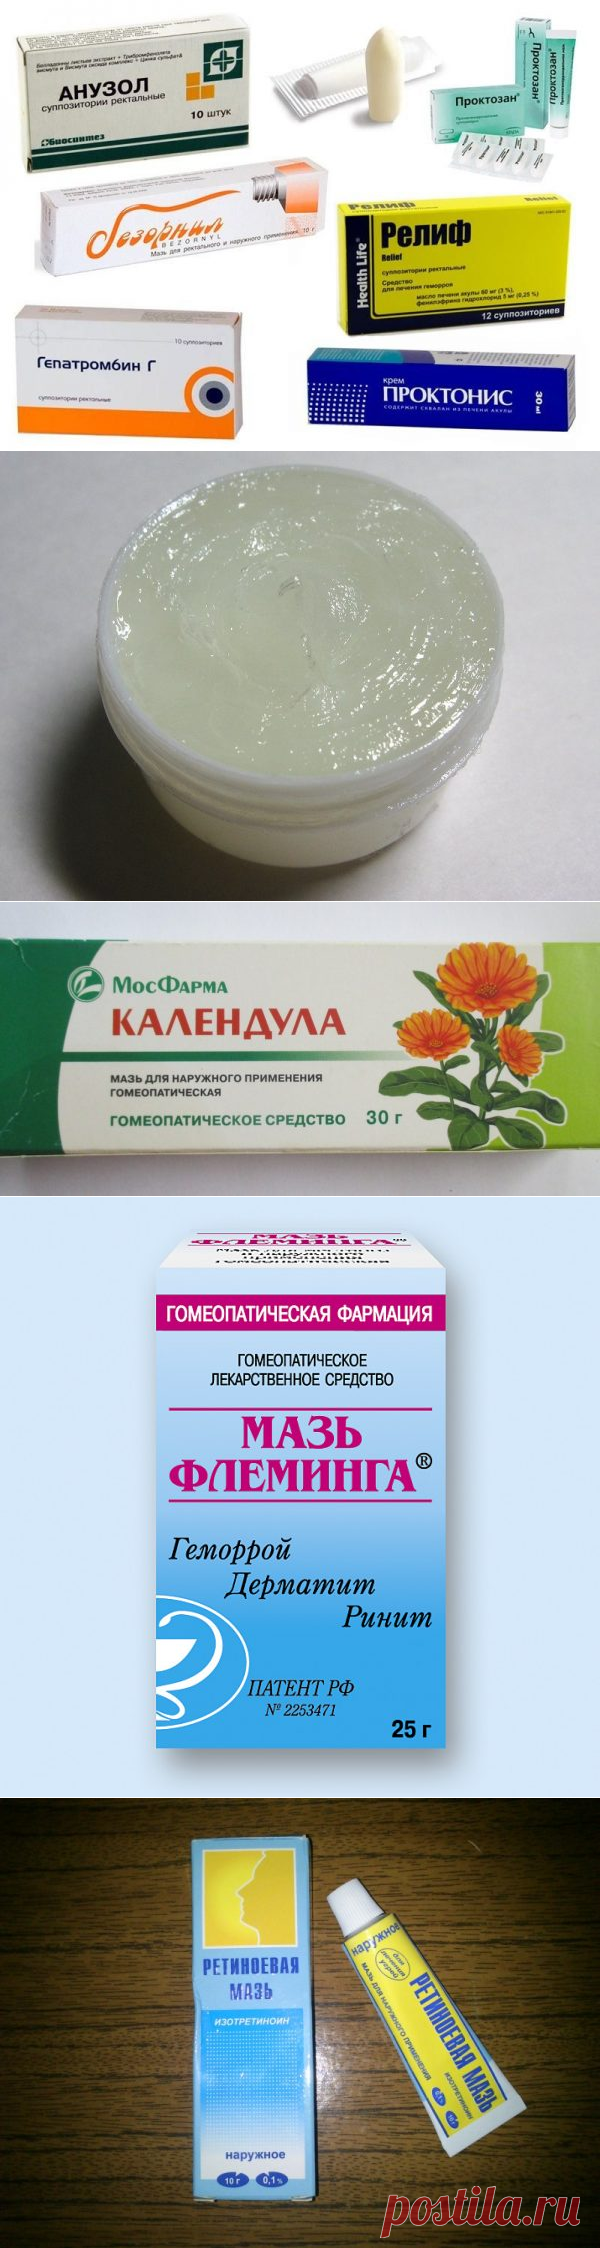 Аптечные средства от морщин, для омоложения лица и красоты: эффективнее ли кремов, обзор препаратов, отзывы